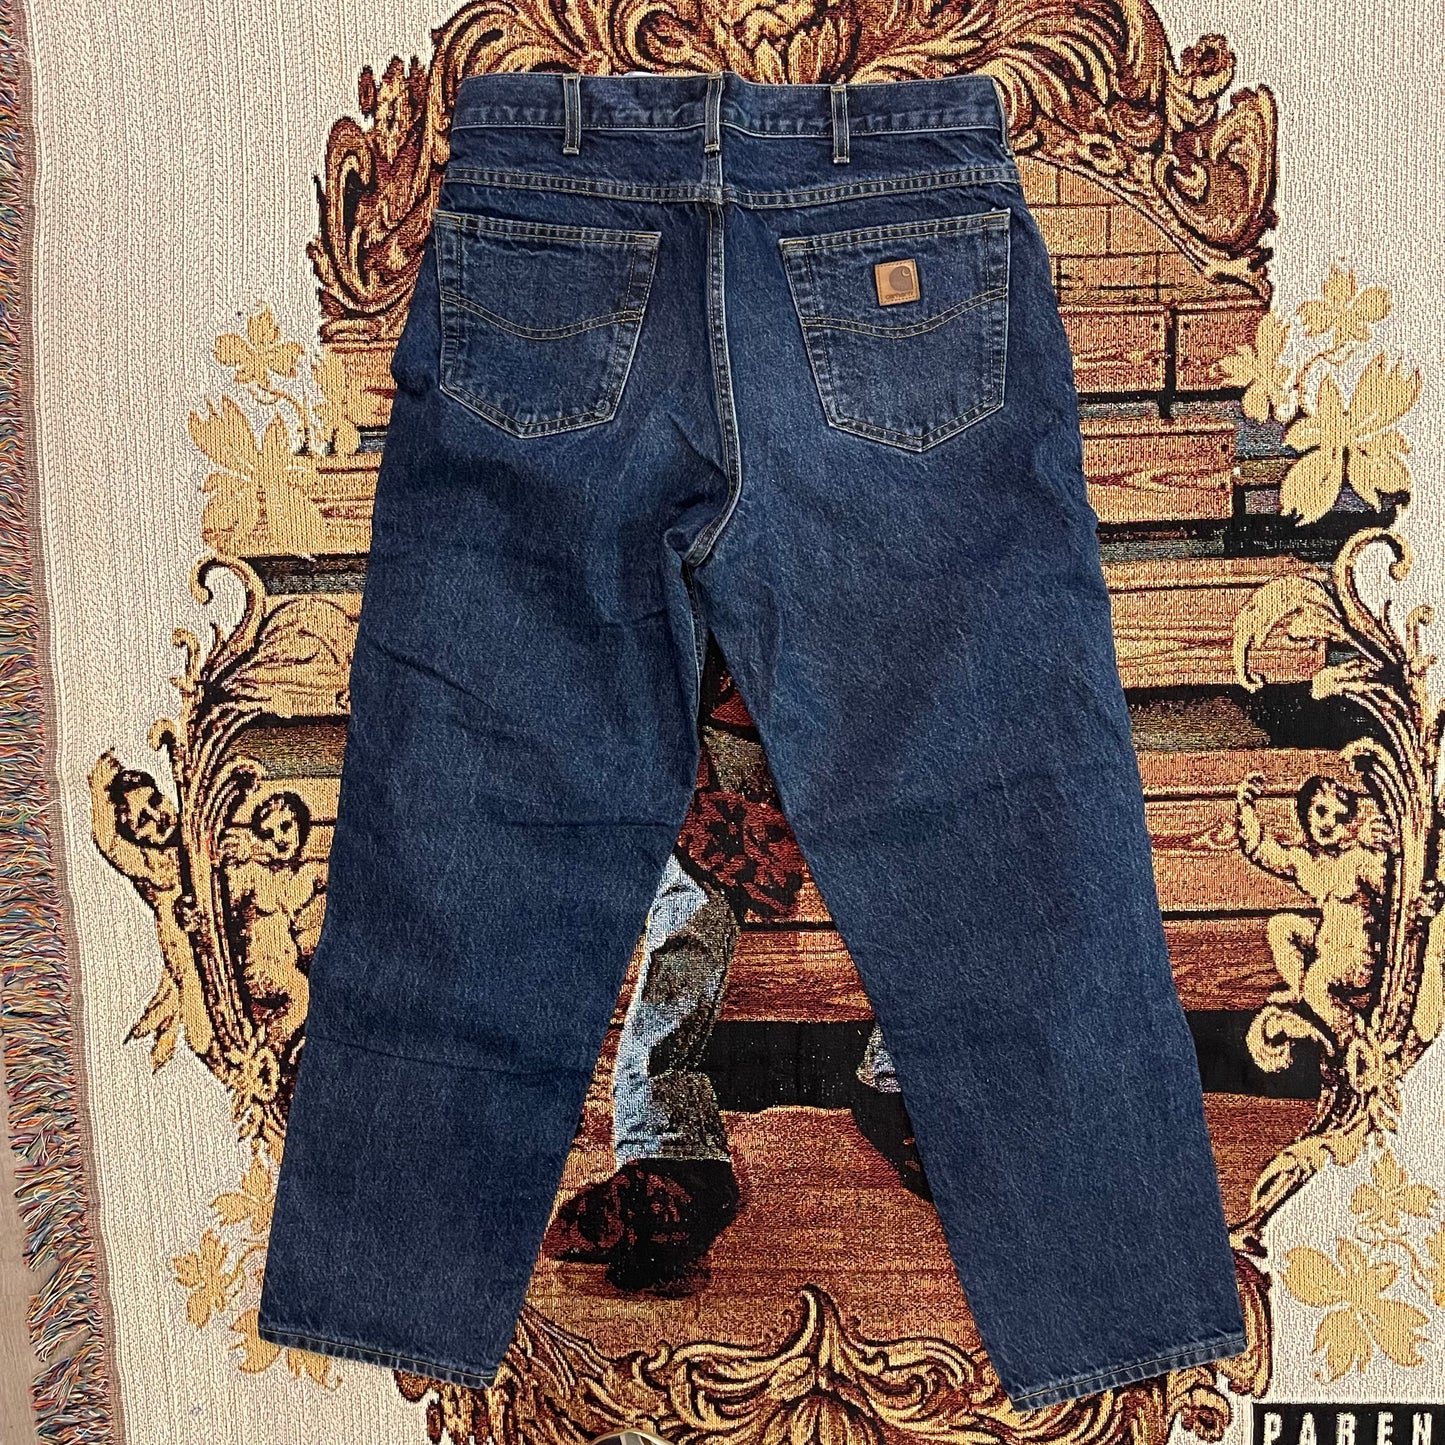 Vintage Carhartt Jeans Dark blue denim